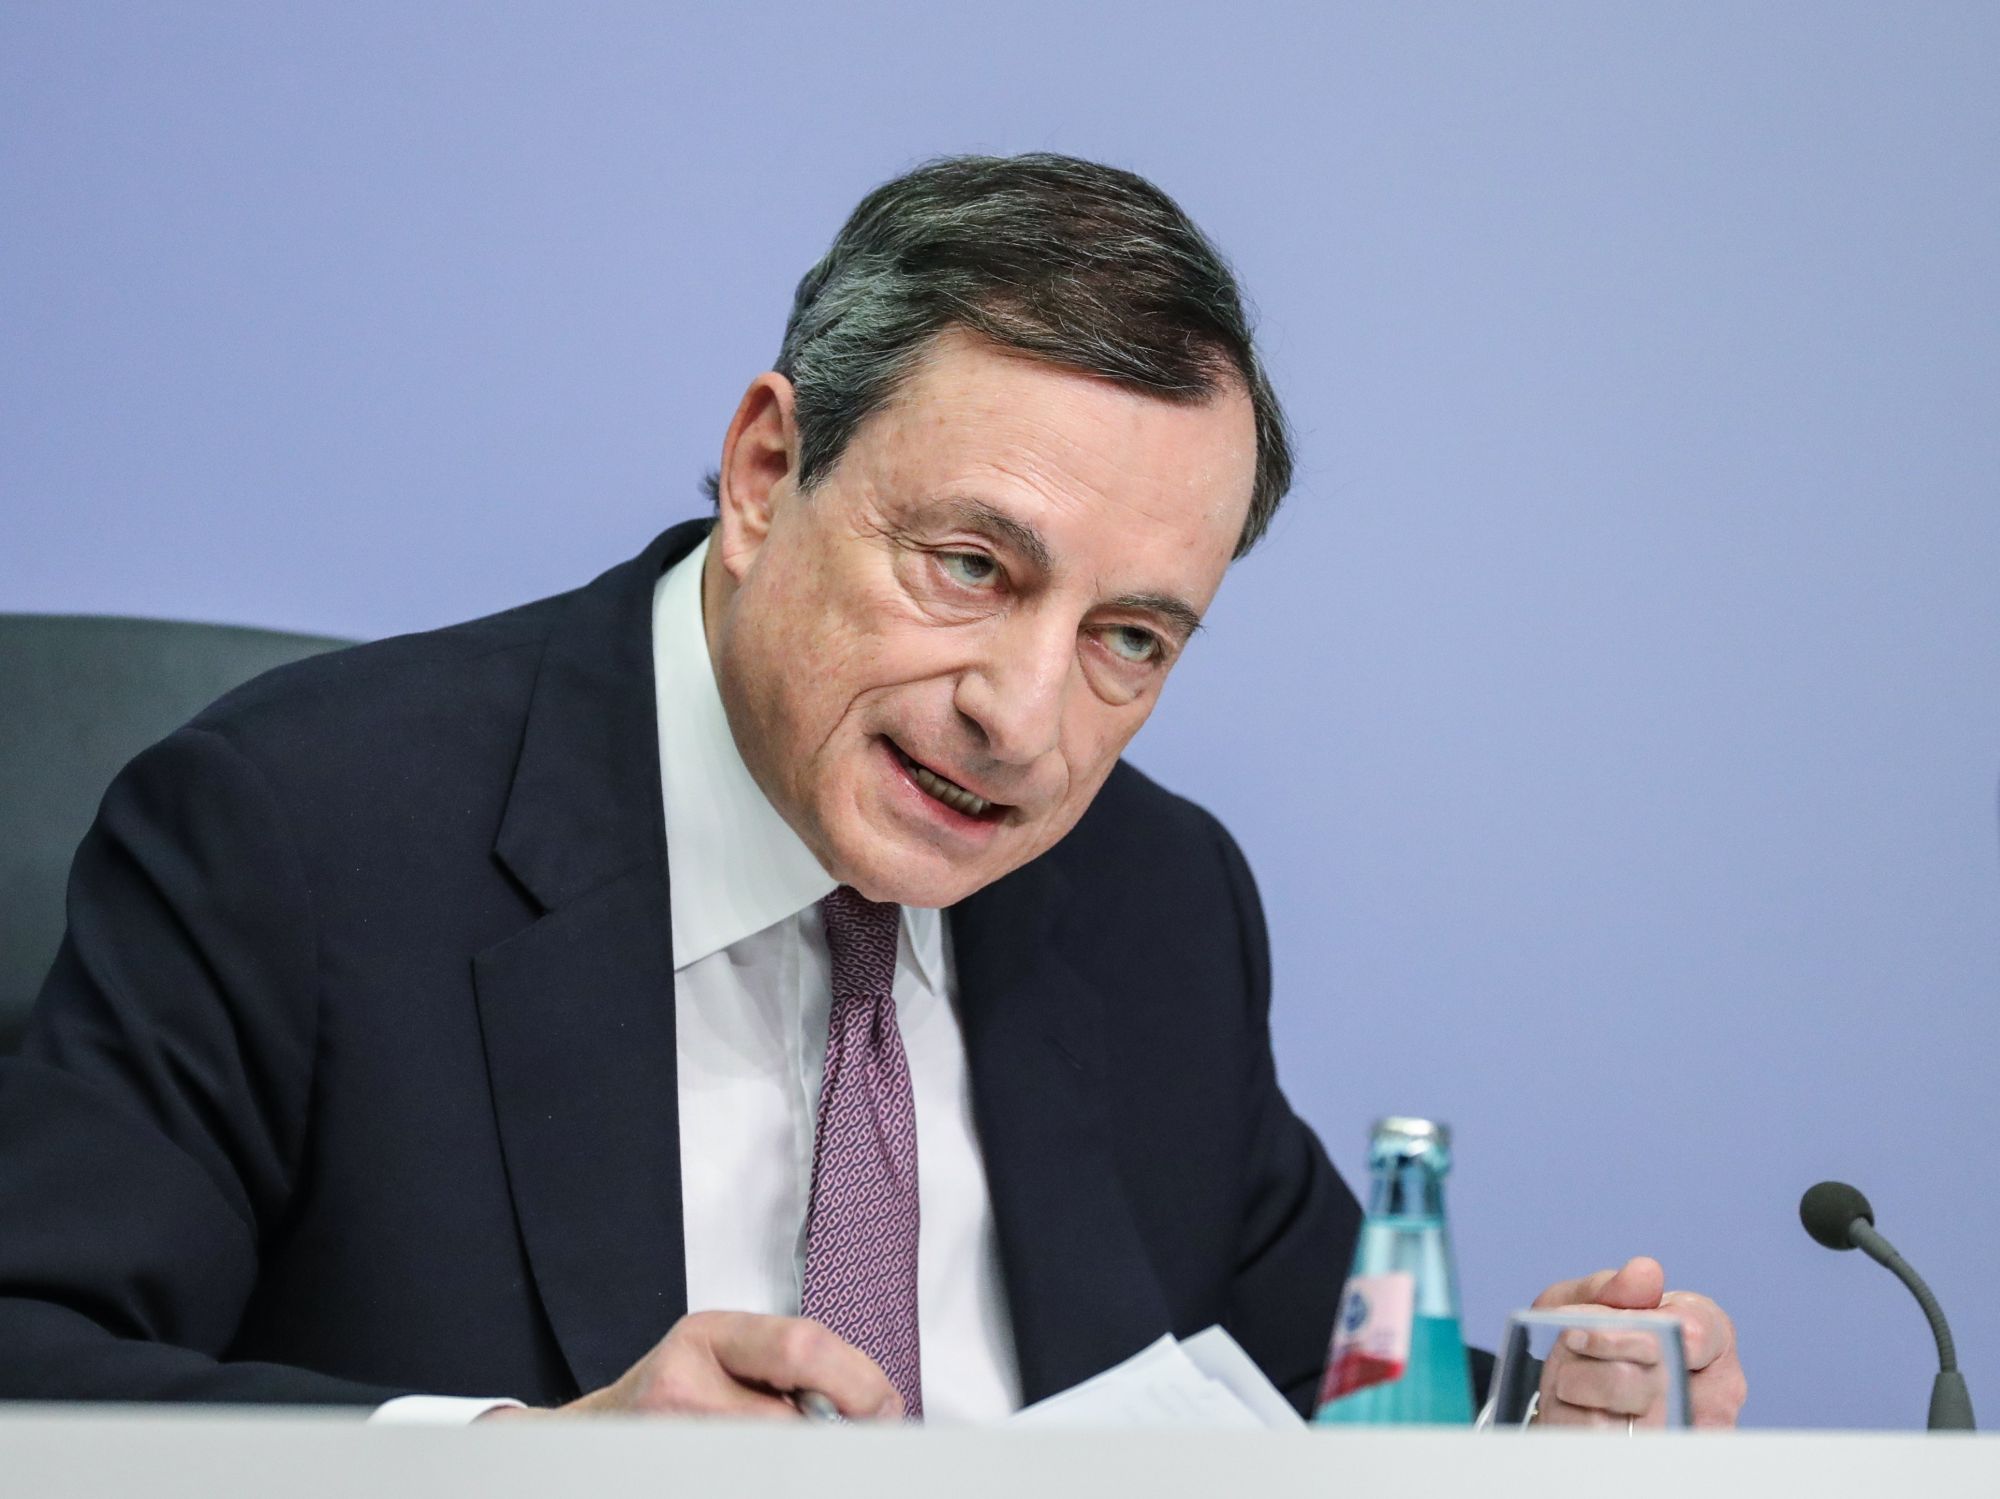 Mario Draghi, az Európai Központi Bank elnöke a kamatdöntést követő sajtótájékoztatón, 2018. január 25-én. EPA/ARMANDO BABANI